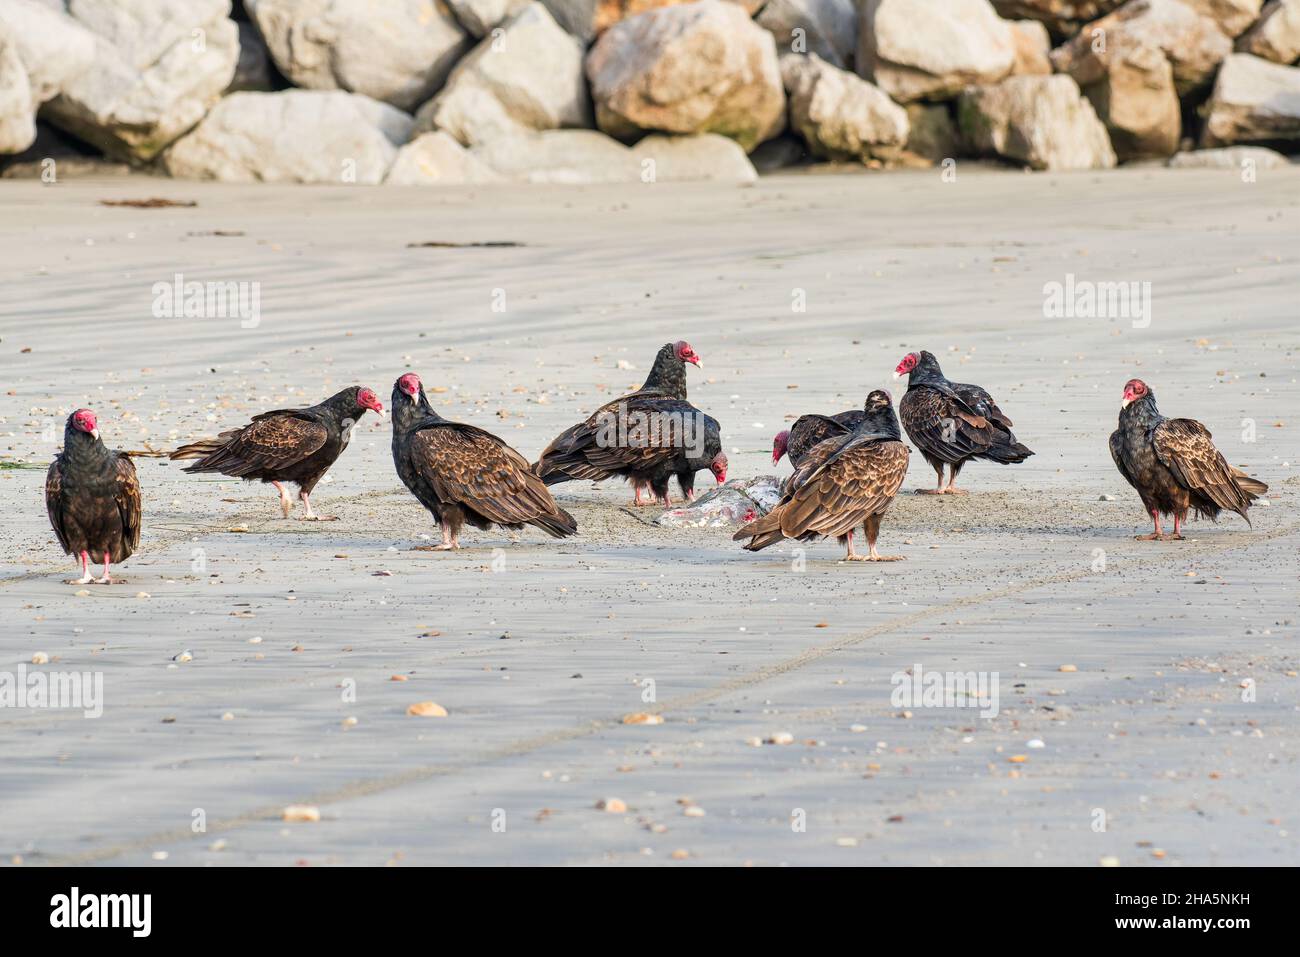 Vautours de dinde sur la plage se nourrissant d'une viande d'animal mort écartée par la mer Banque D'Images